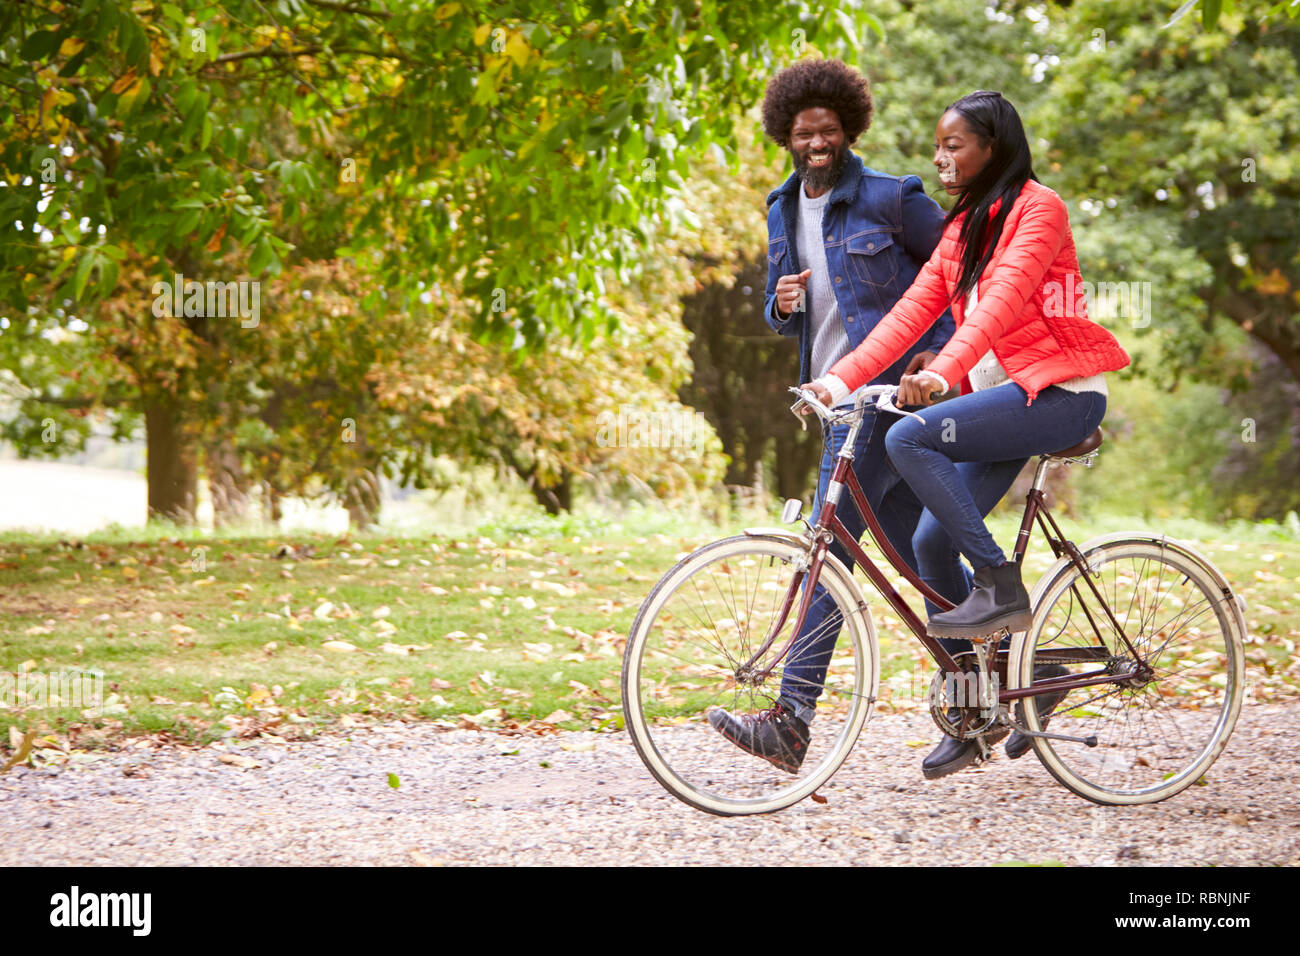 Negro corriendo en un parque junto a su novia, quien está montando una bicicleta, vista lateral Foto de stock